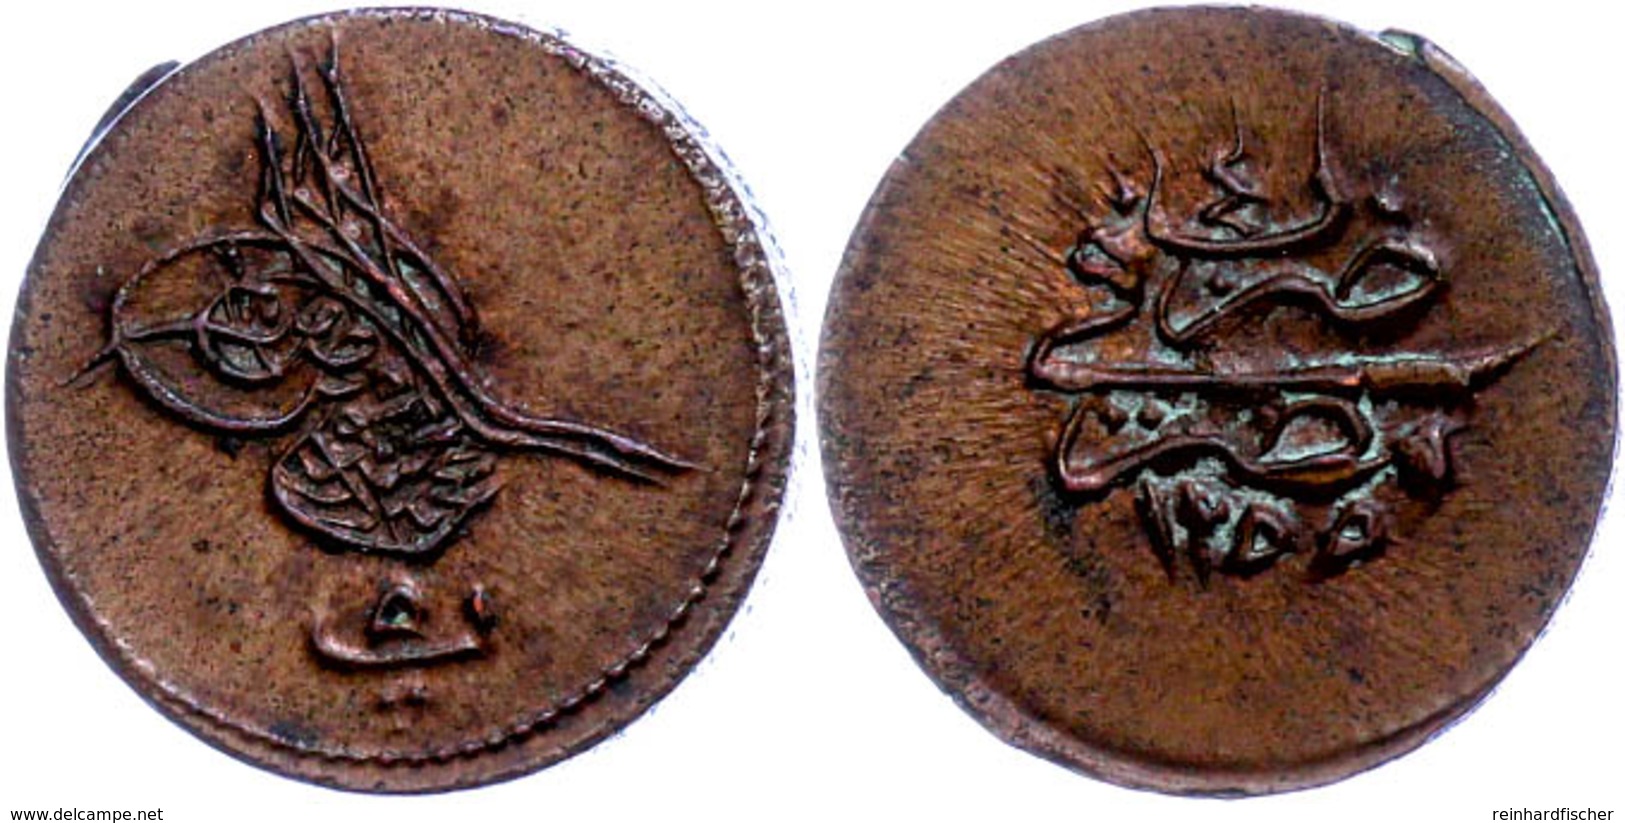 5 Para, AH 1255/4, Abdülmecid, Misir, KM 222 (Ägypten), St.  St - Orientalische Münzen